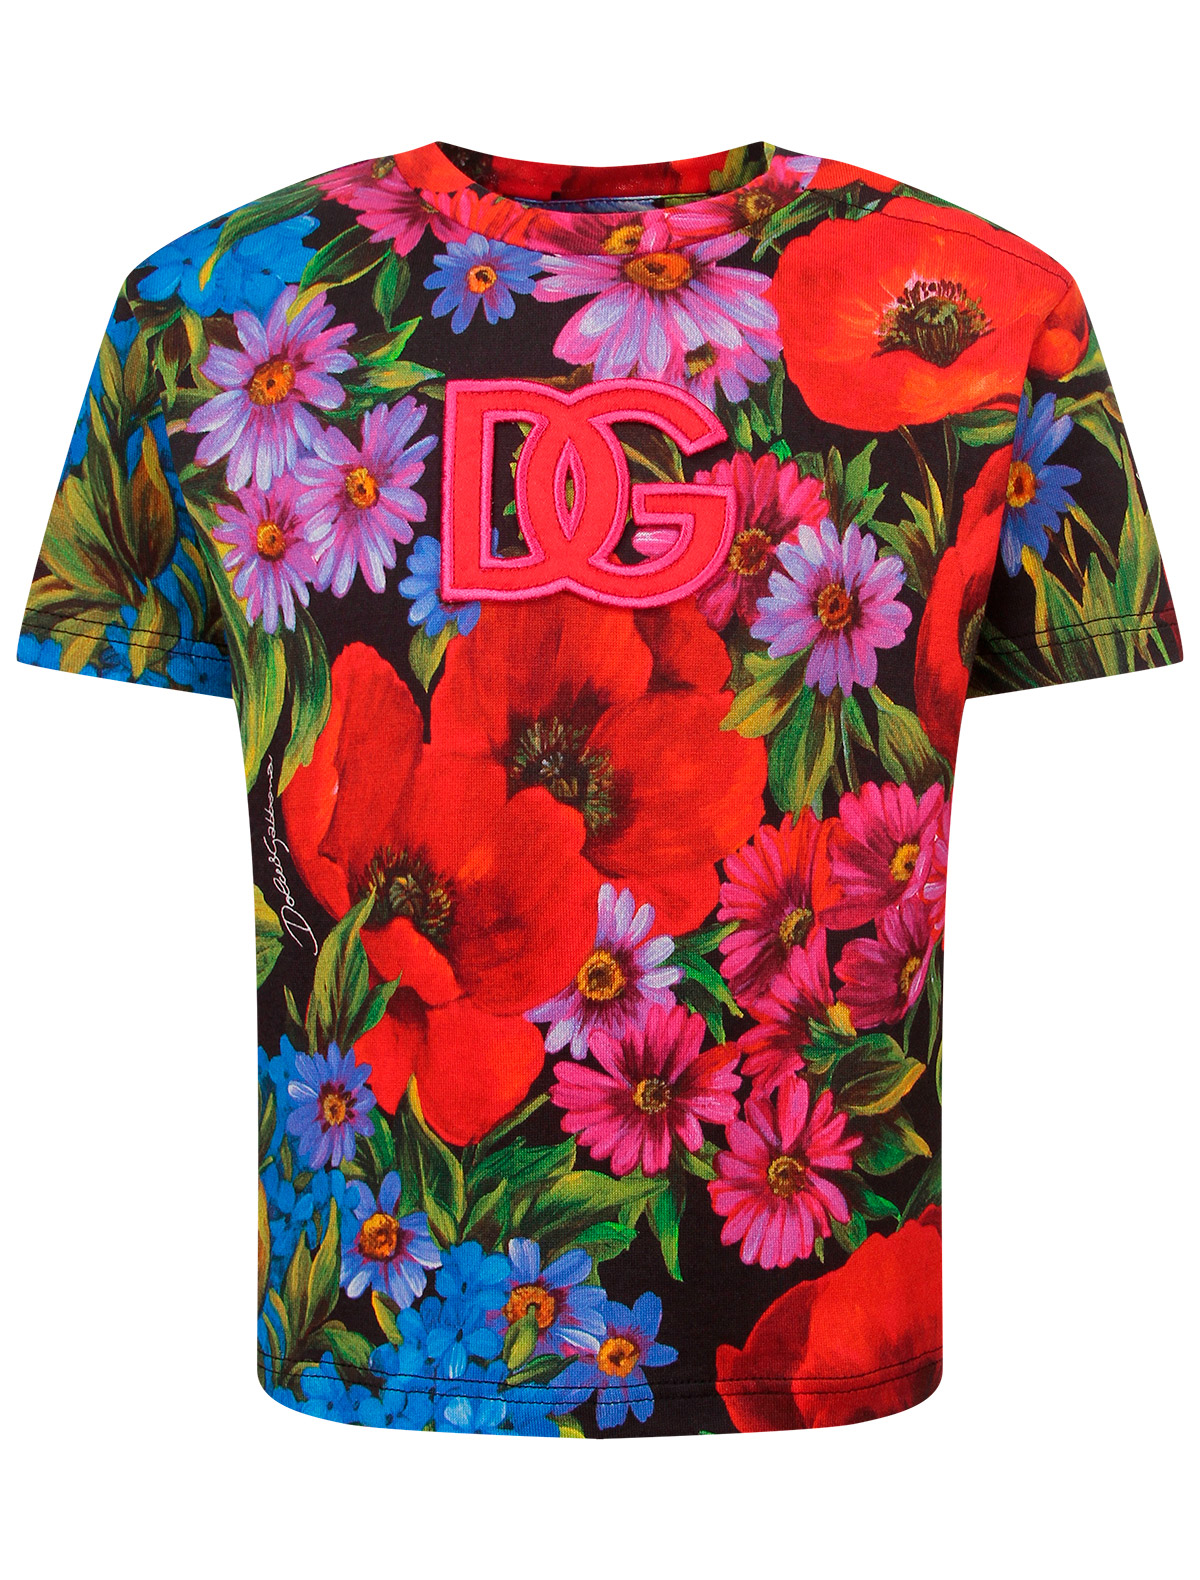 Футболка Dolce & Gabbana футболка со сплошным разноцветным лого dolce